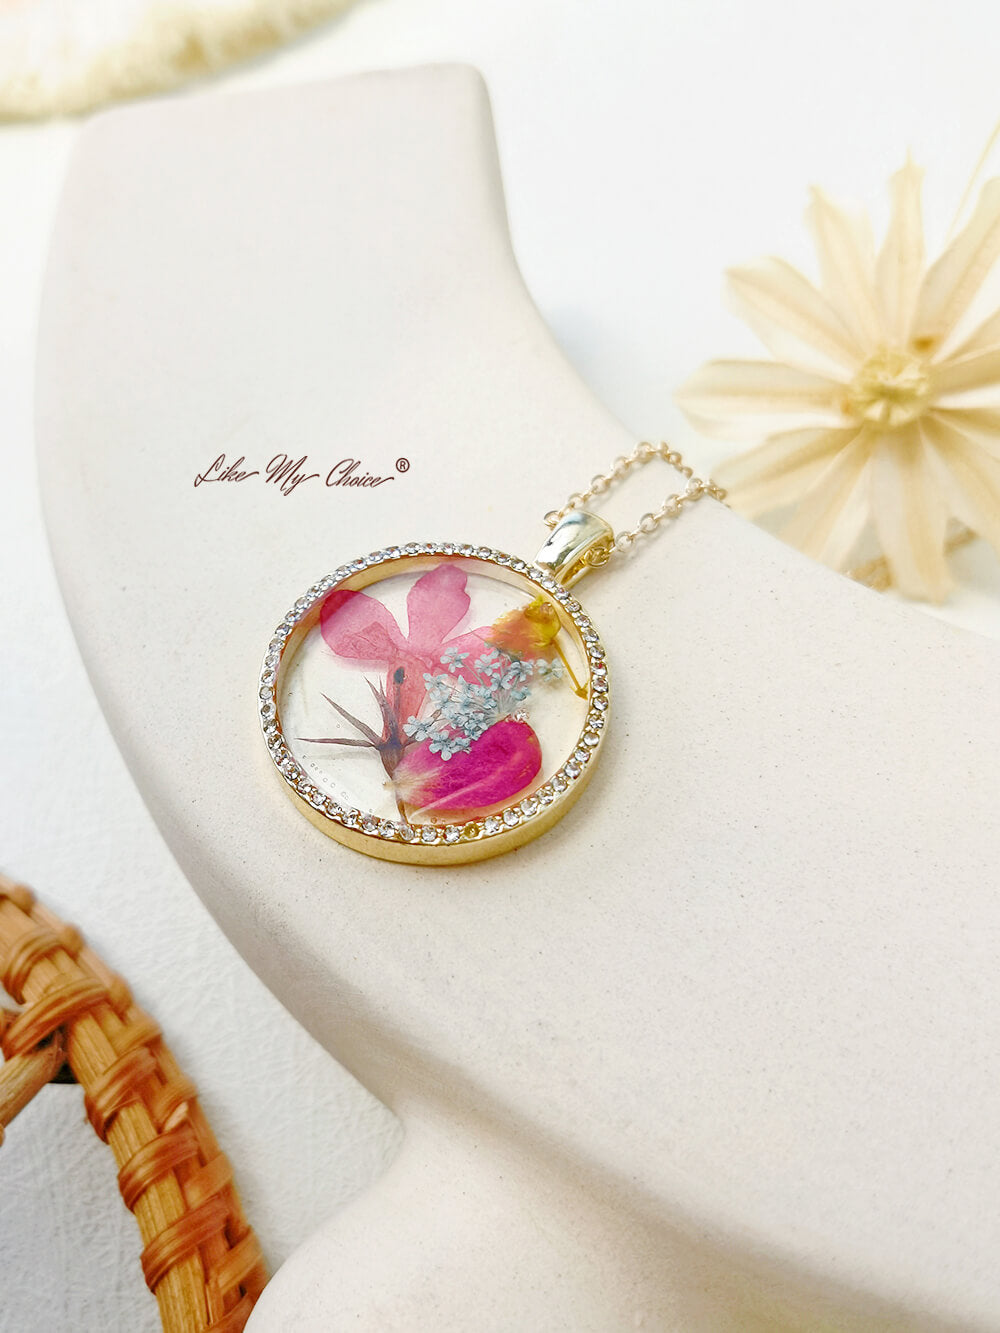 Collier avec pendentif rond en résine et cristal, fleur d'orchidée dansante